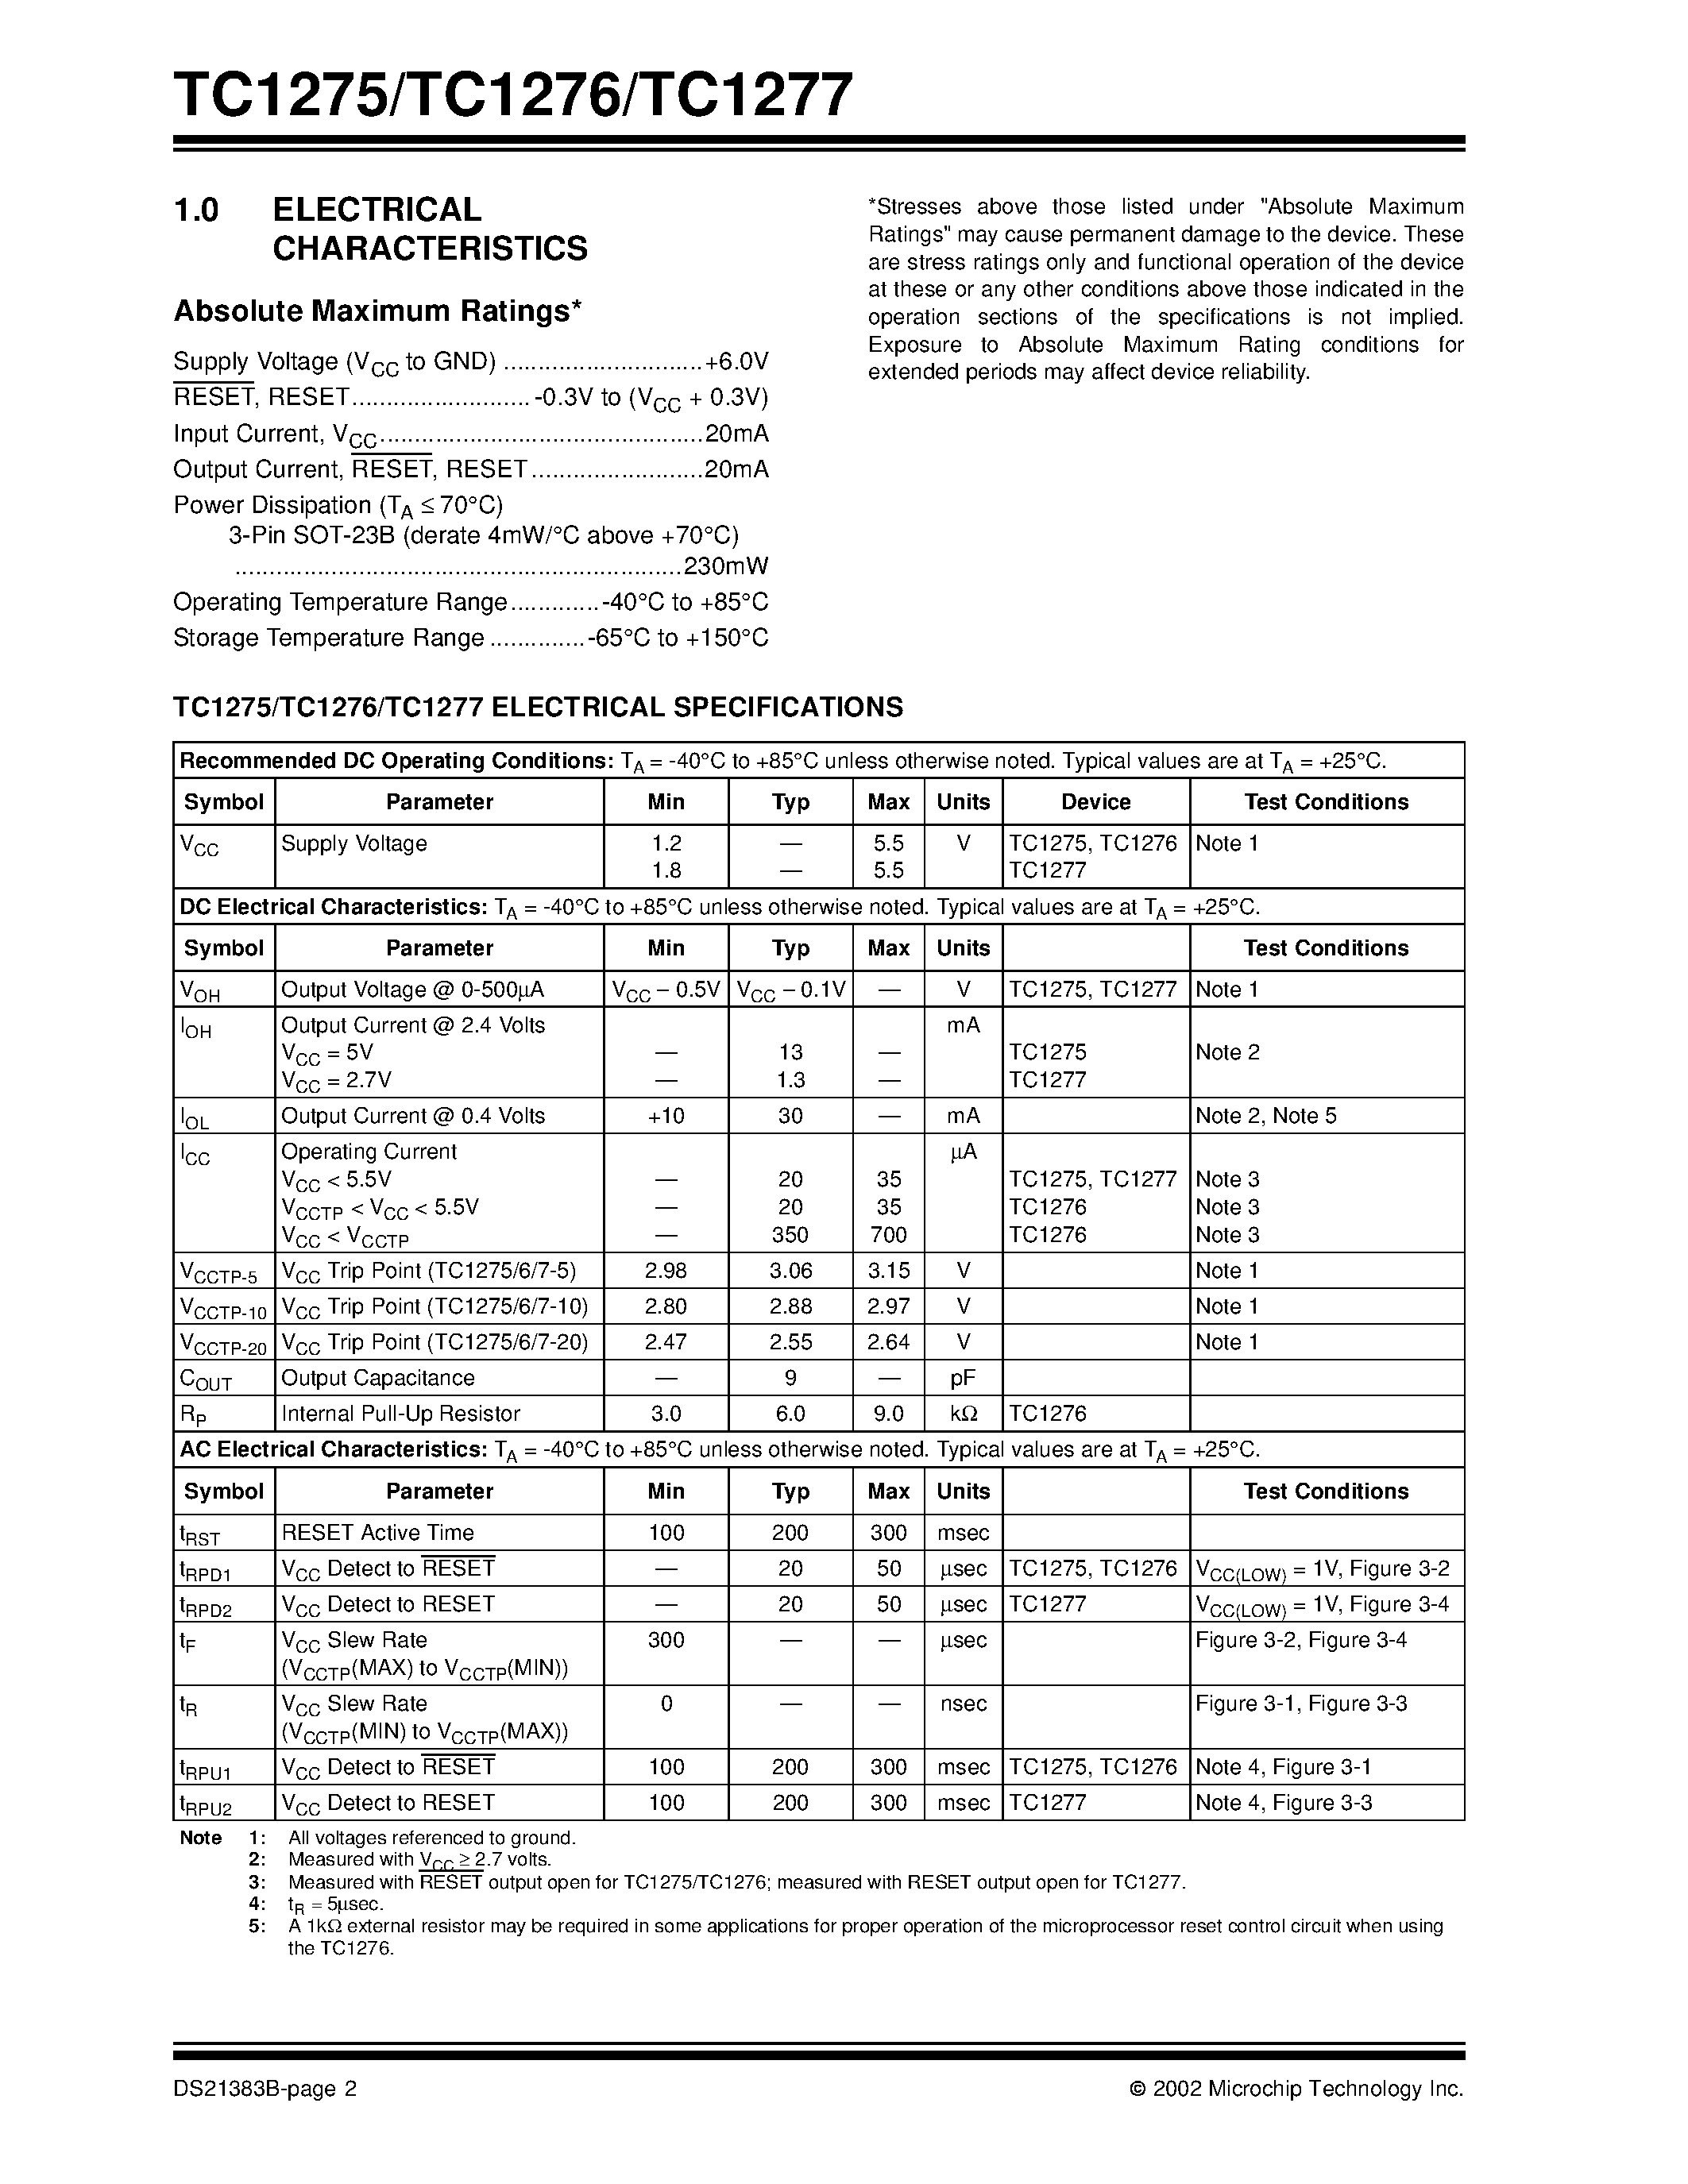 Datasheet TC1275 - (TC1275 / TC1276 / TC1277) 3-Pin Reset Monitors for 3.3V Systems page 2